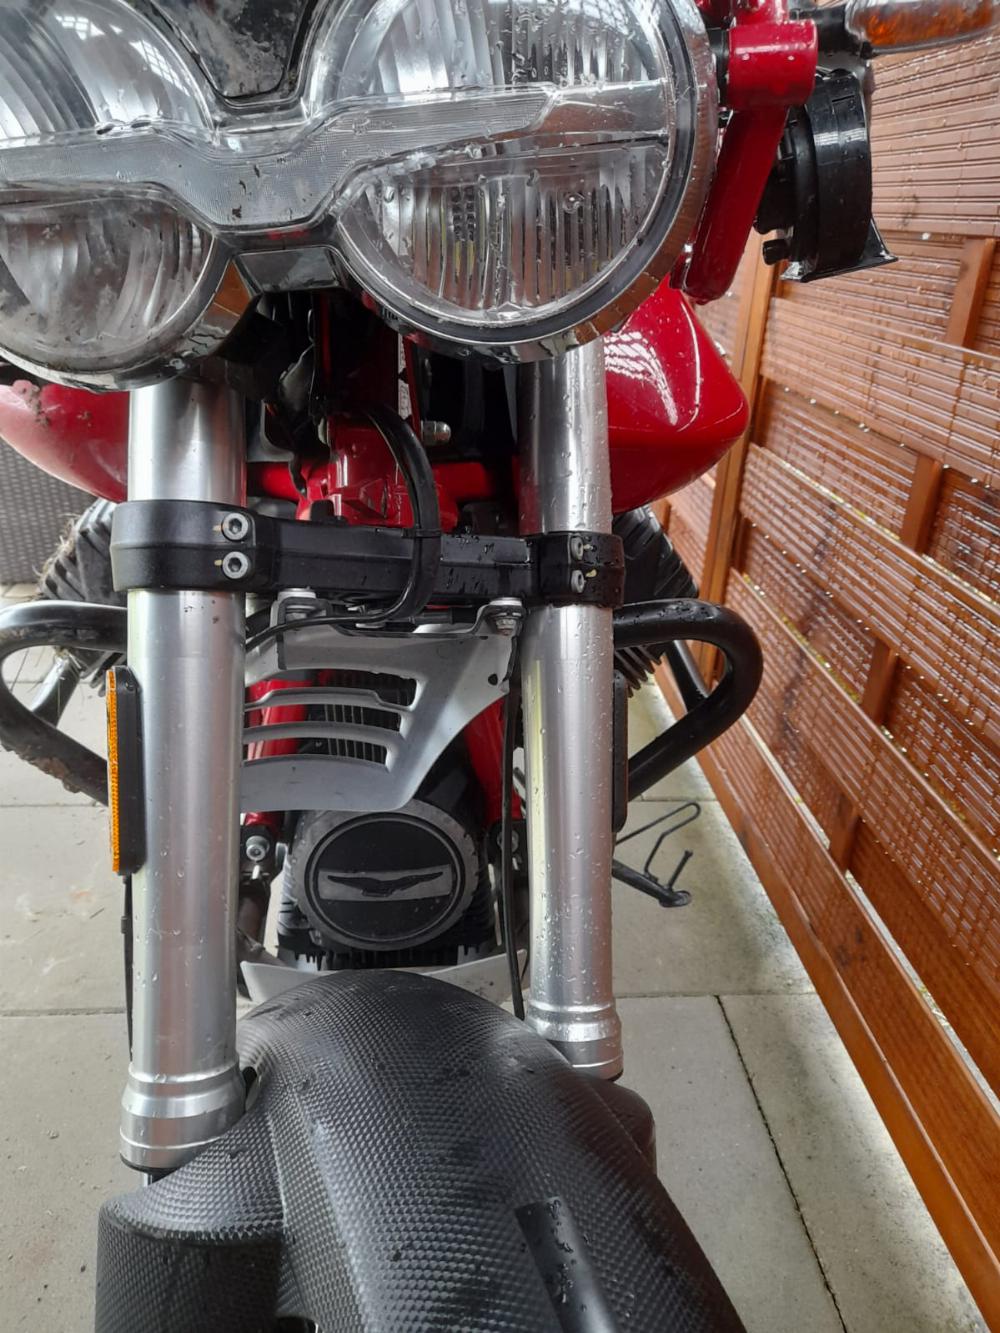 Motorrad verkaufen Moto Guzzi VT 85 Ankauf